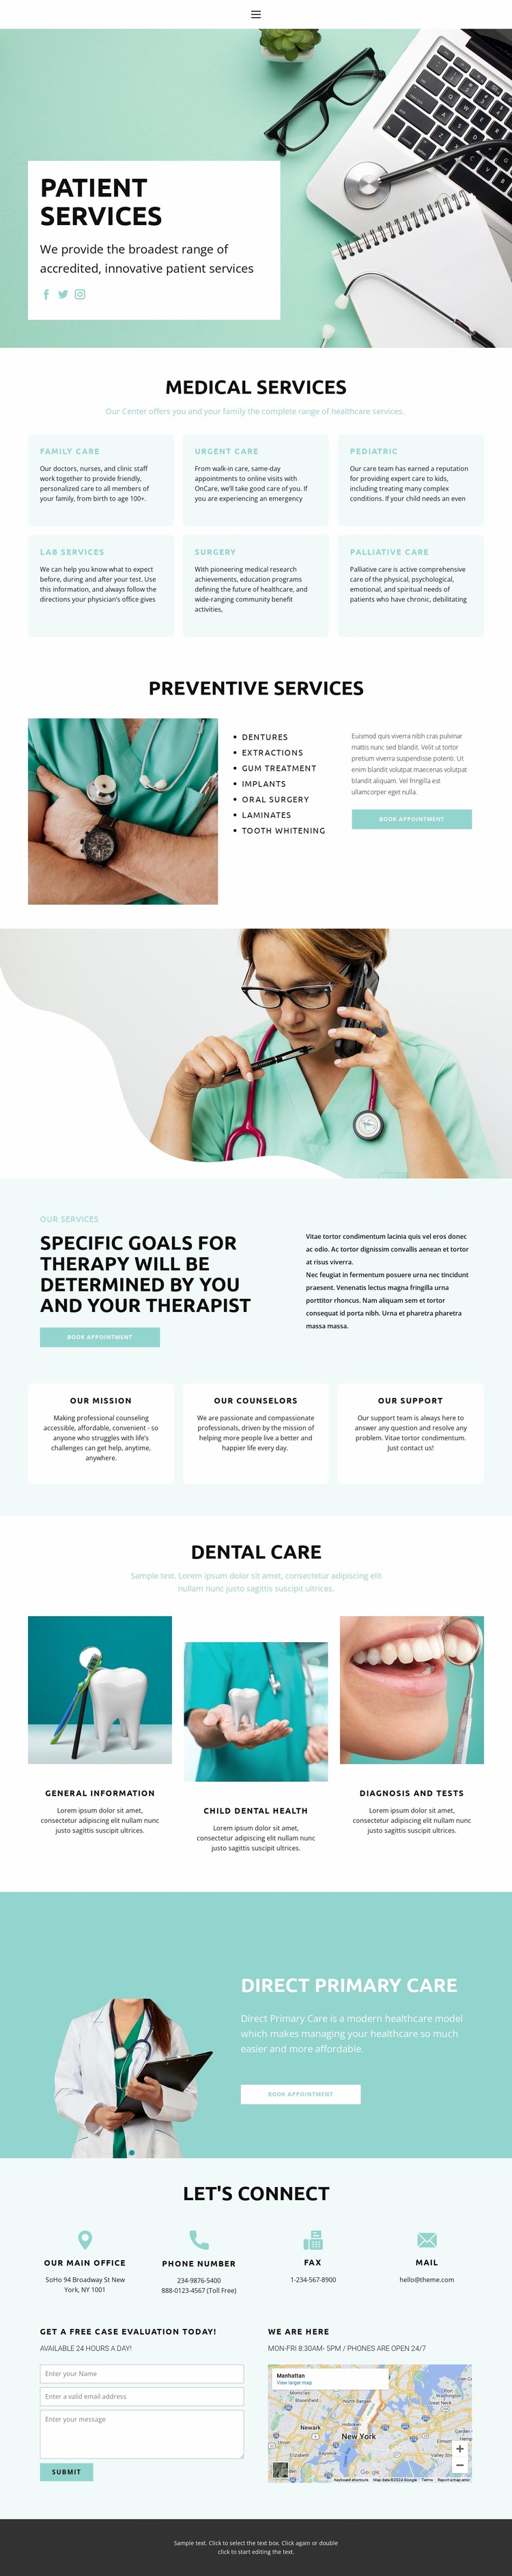 Evidence-based medicine Website Design